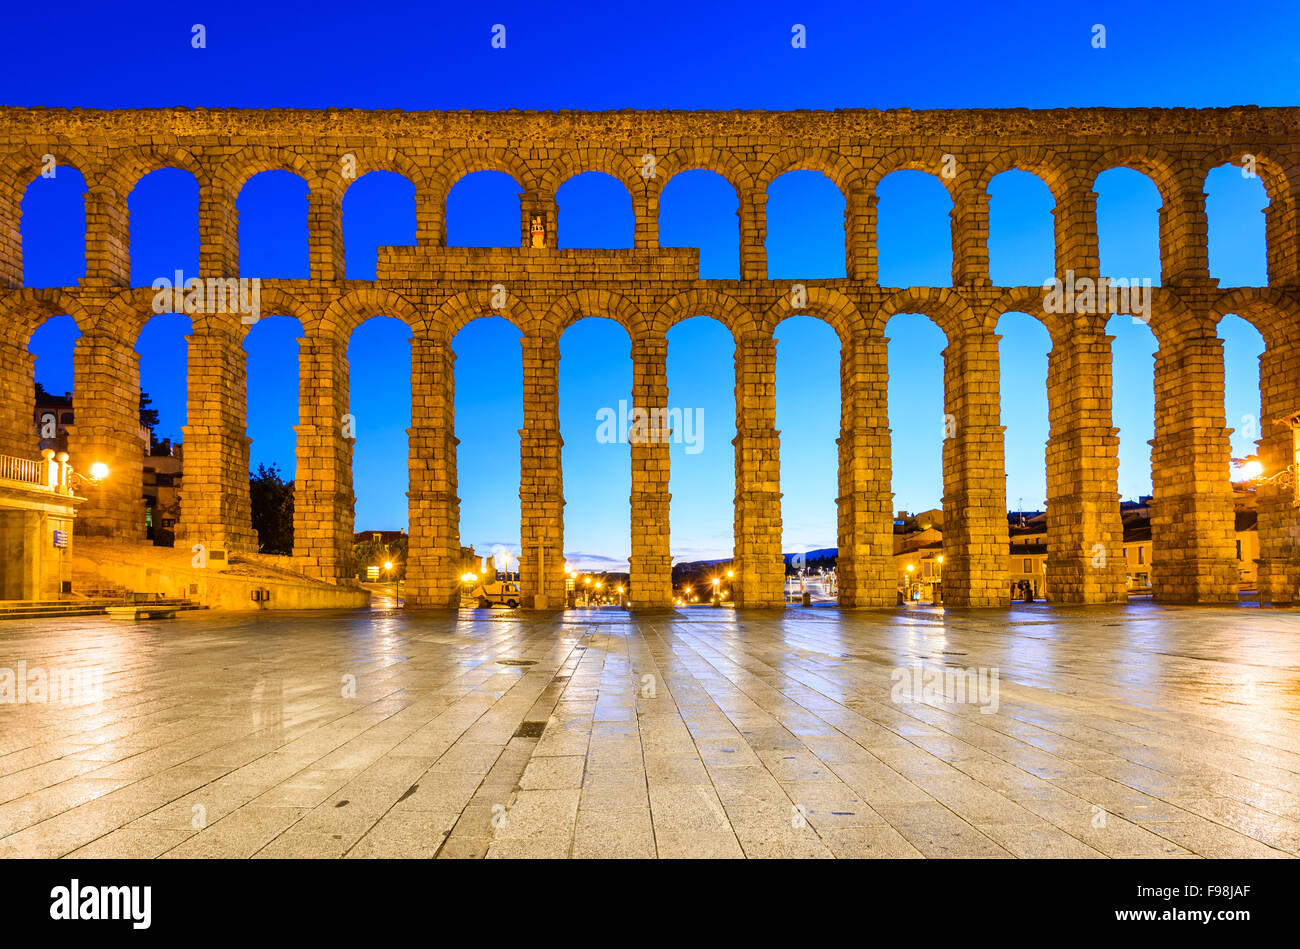 Segovia, España. La Plaza del Azoguejo y el antiguo acueducto romano, desde el siglo I A.C. del Imperio Romano. Foto de stock